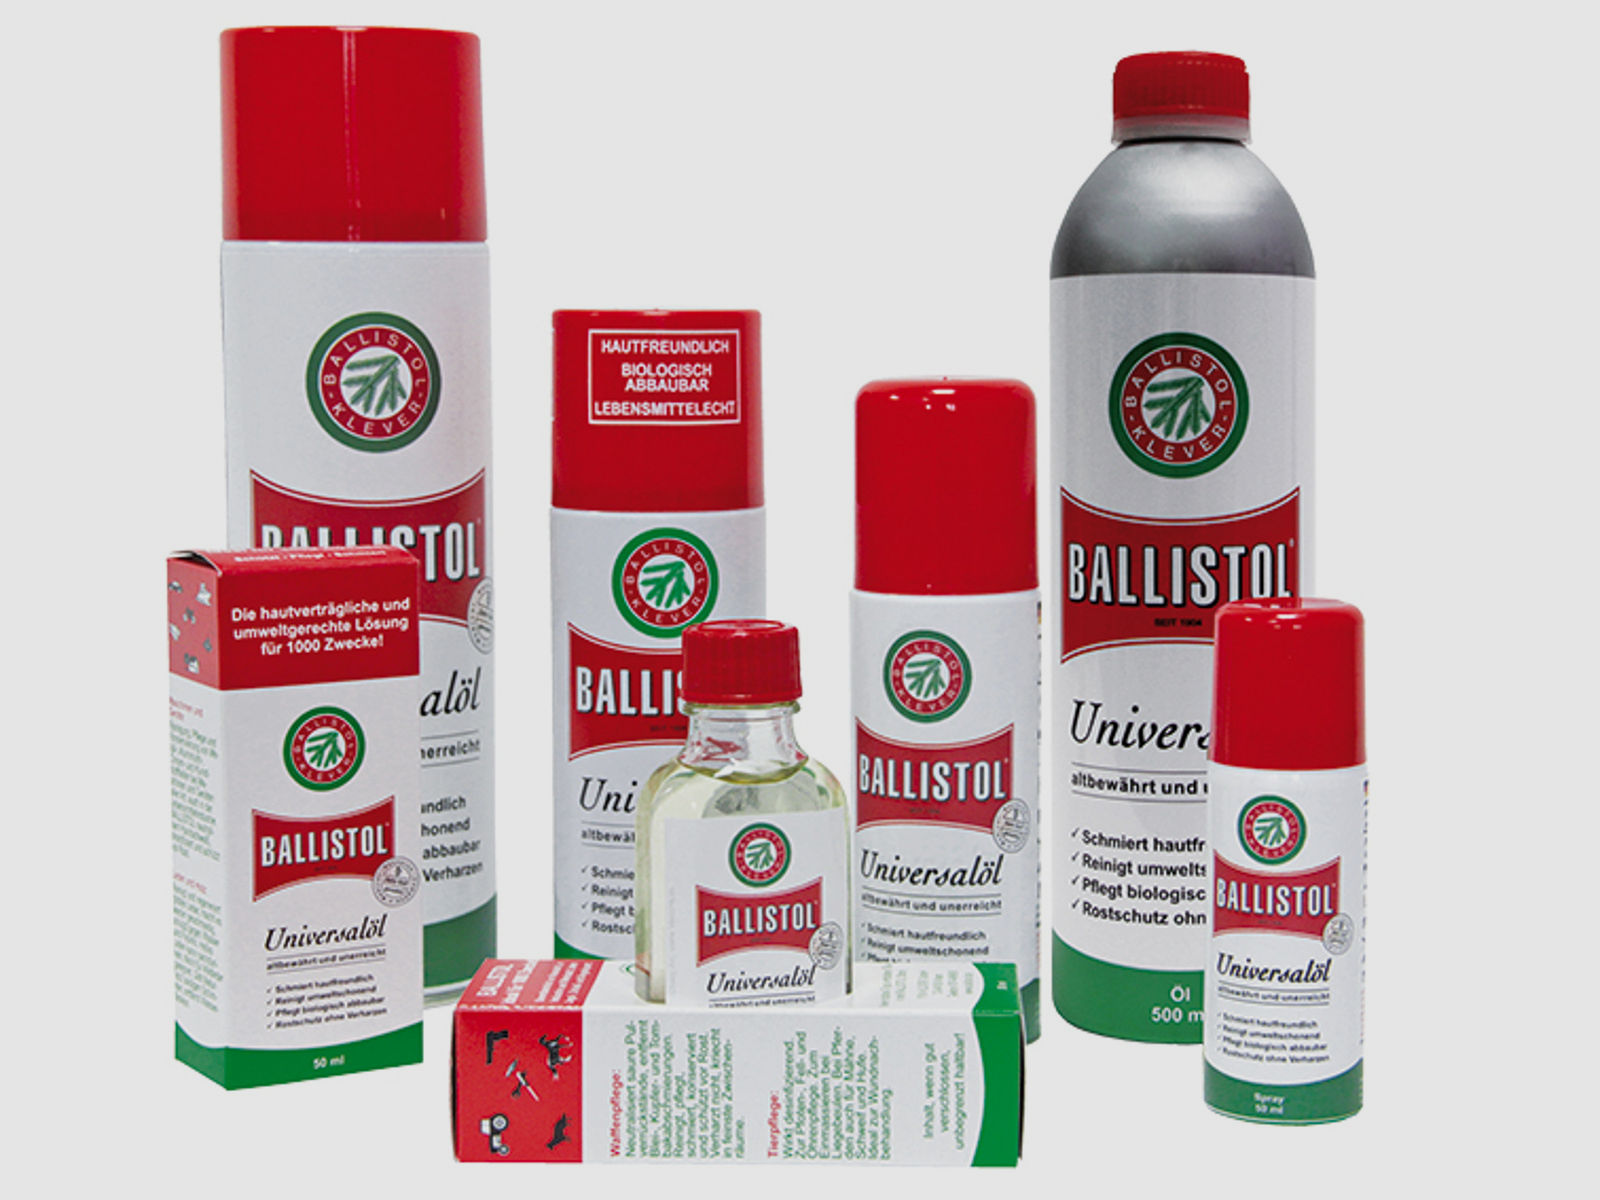 Ballistol Universalöl 500ml Kanne #21150 | Waffenöl Waffen- Holz- und Lederpflege > verharzt NICHT